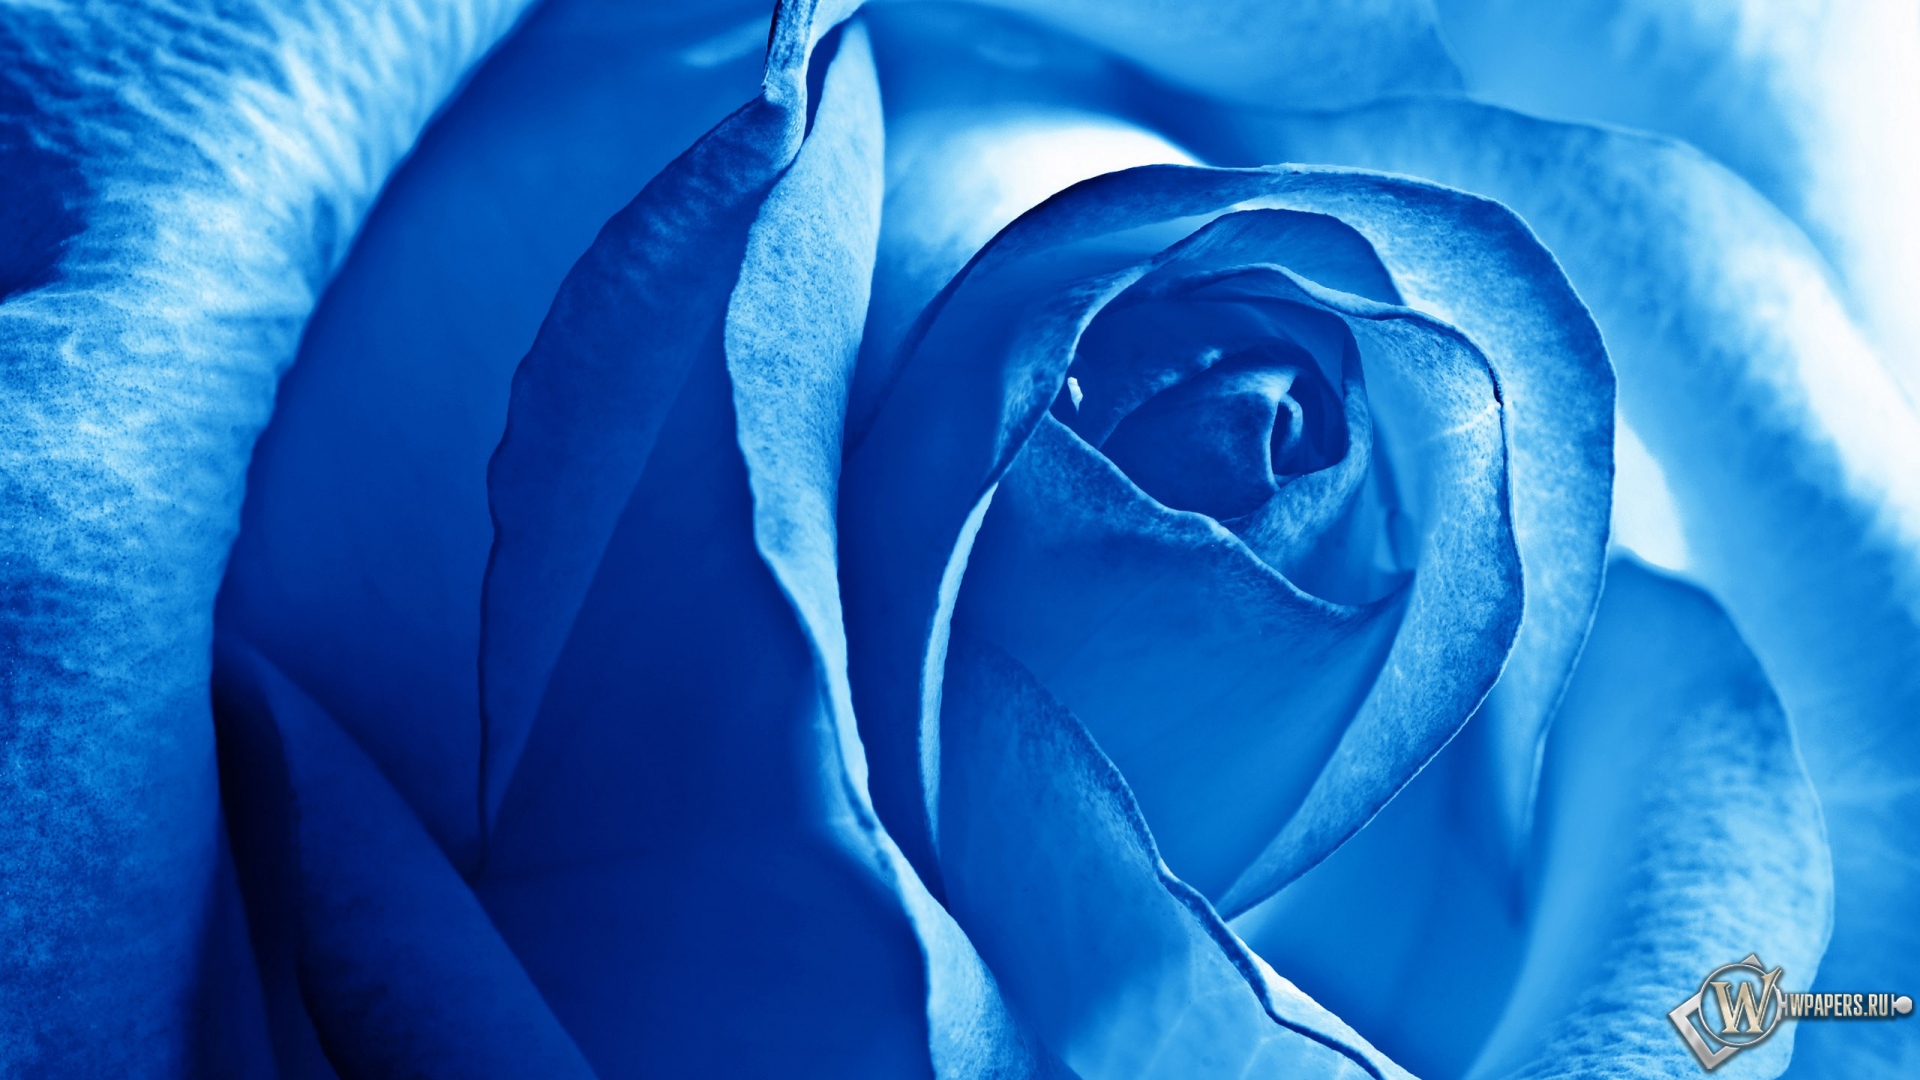 Роза синяя 1920x1080